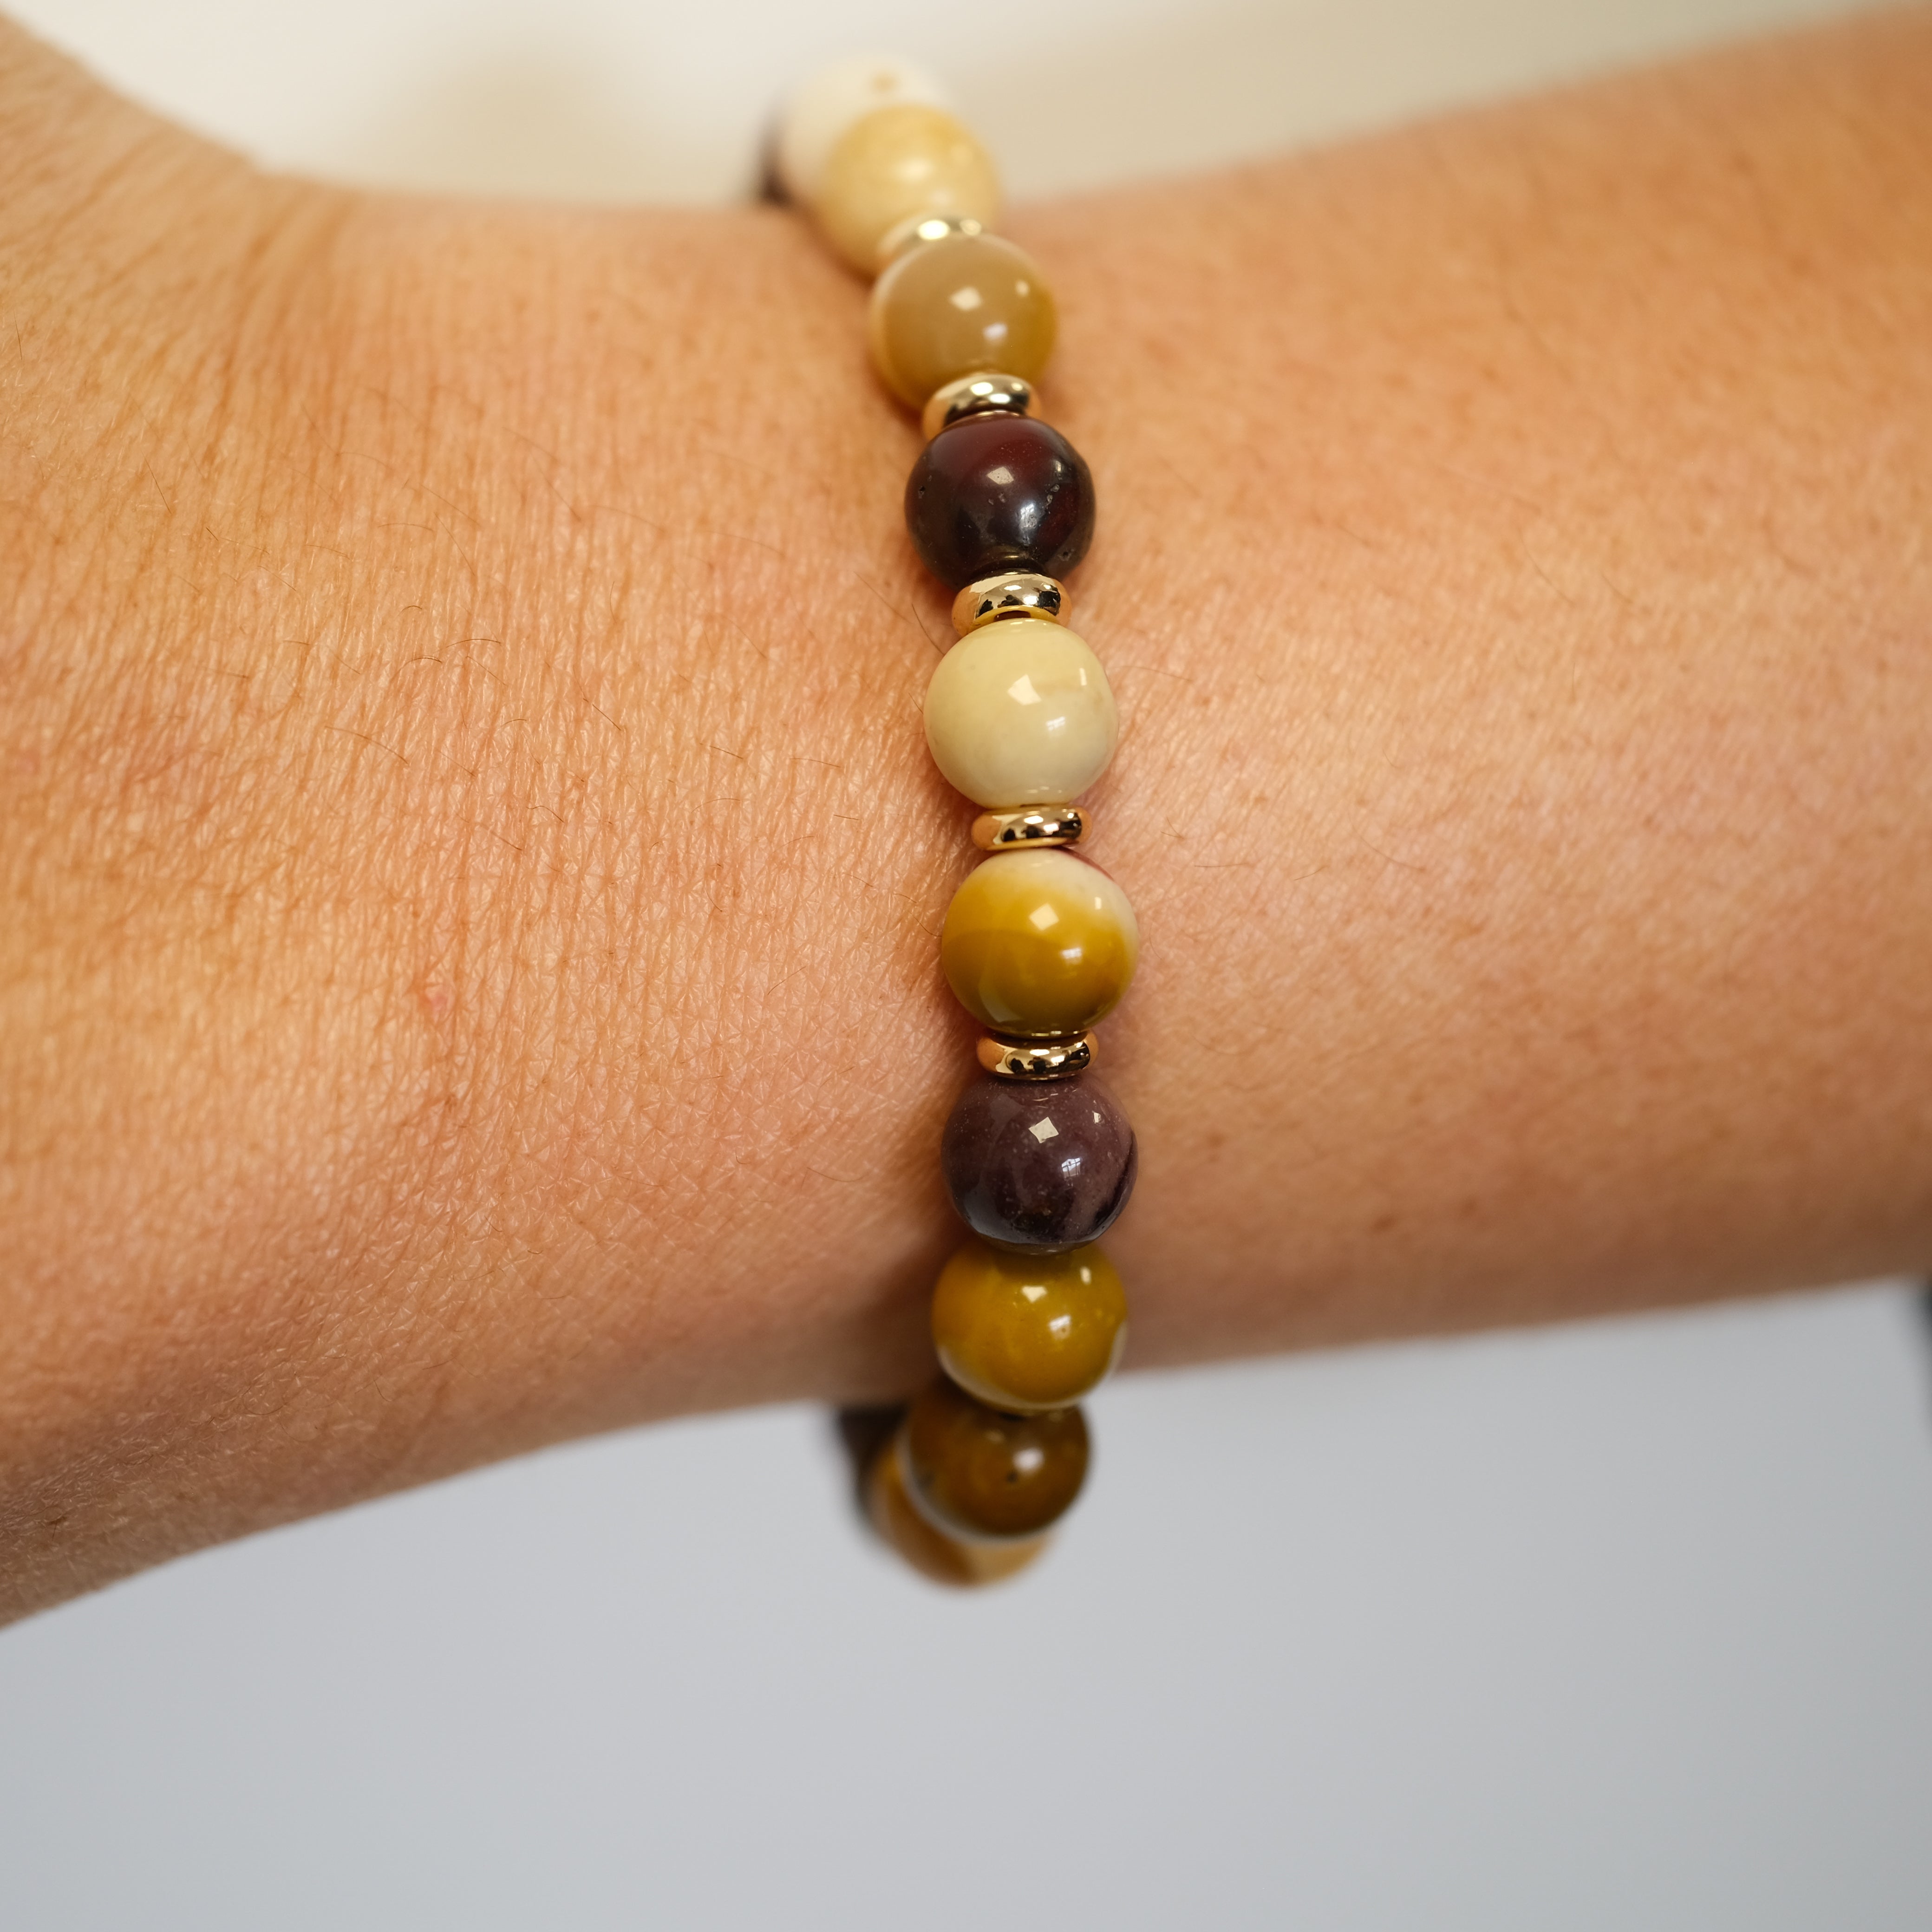 A mookaite gemstone bracelet worn on a model's wrist